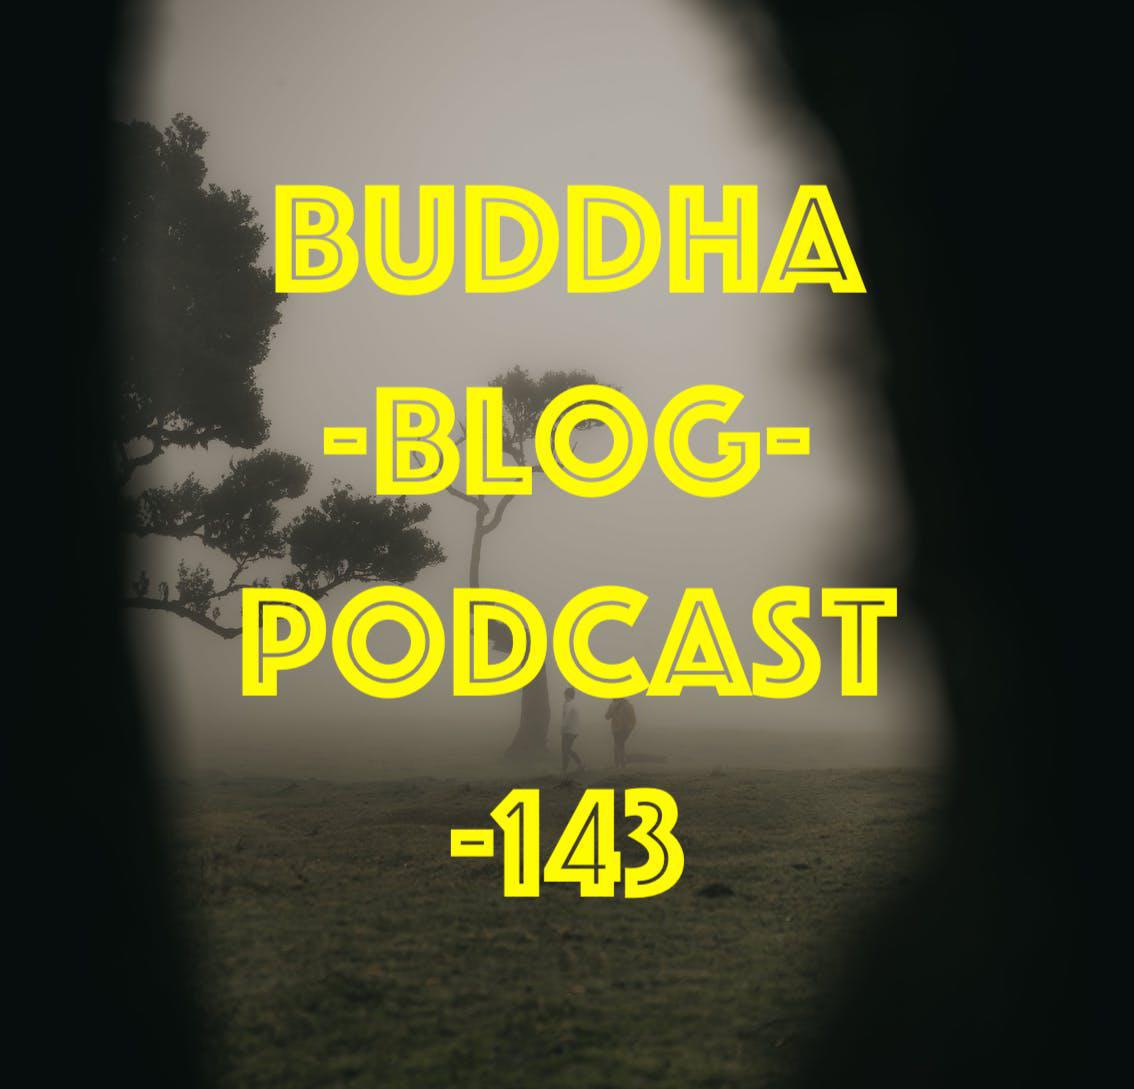 Buddha-Blog-Podcast Folge 143